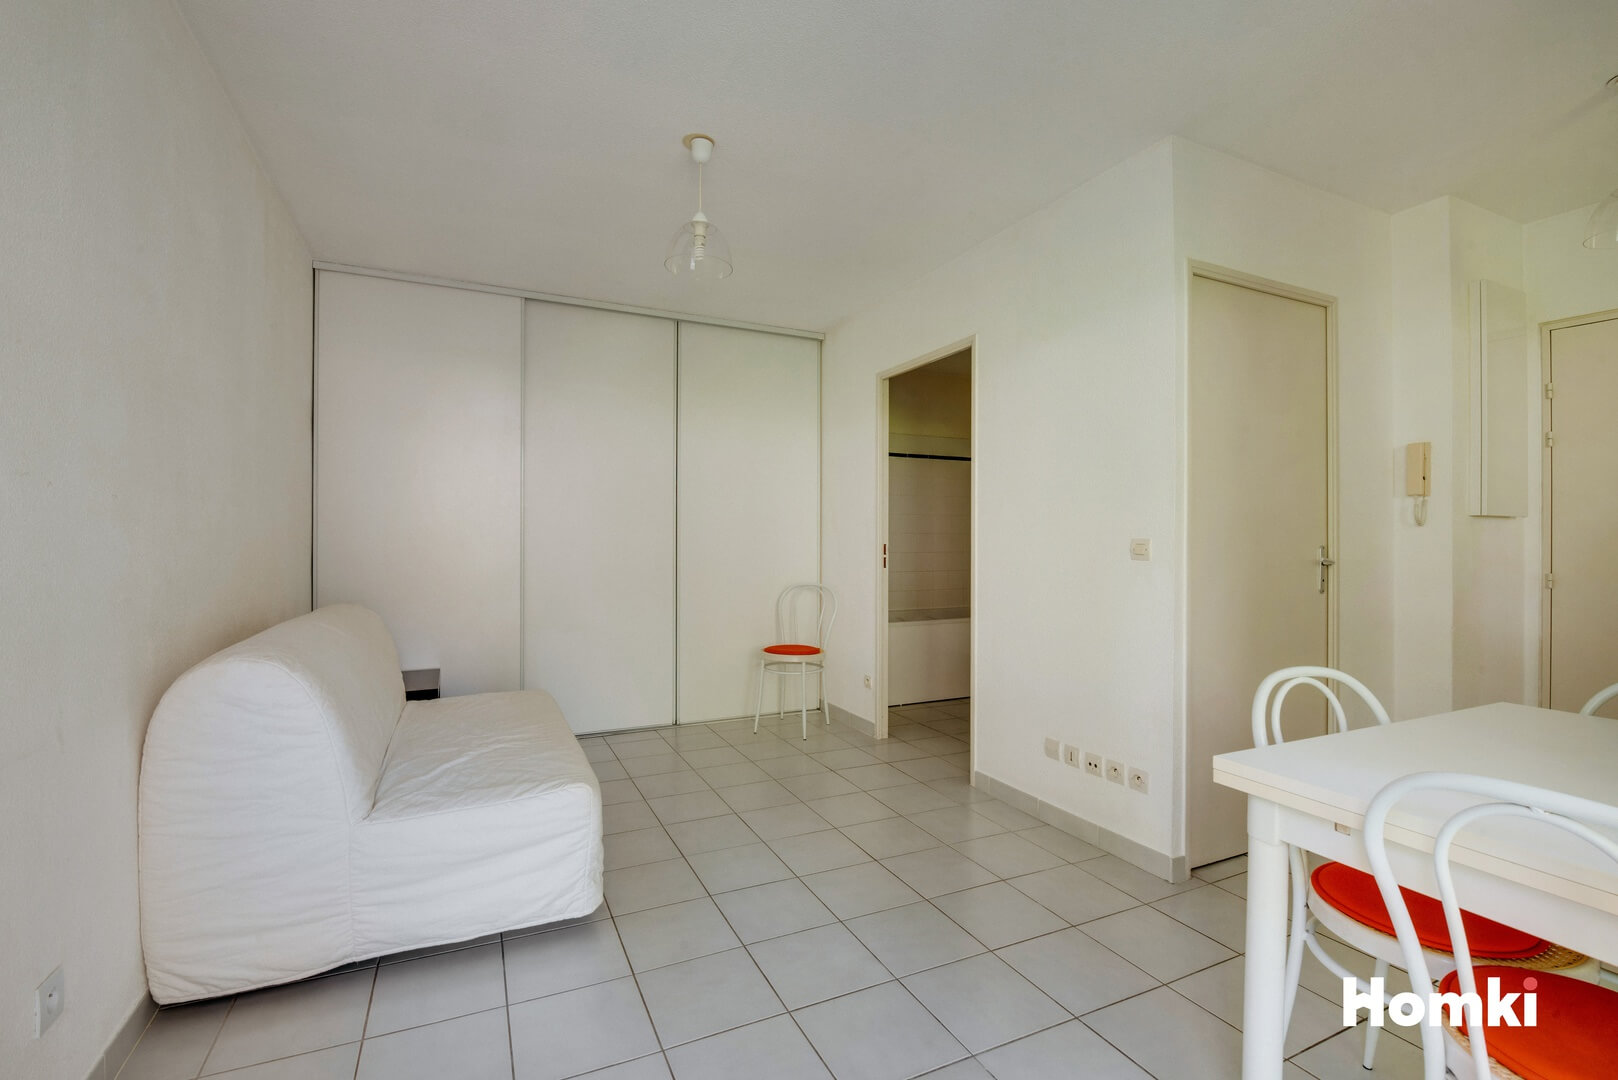 Homki - Vente Appartement  de 27.0 m² à Montpellier 34080